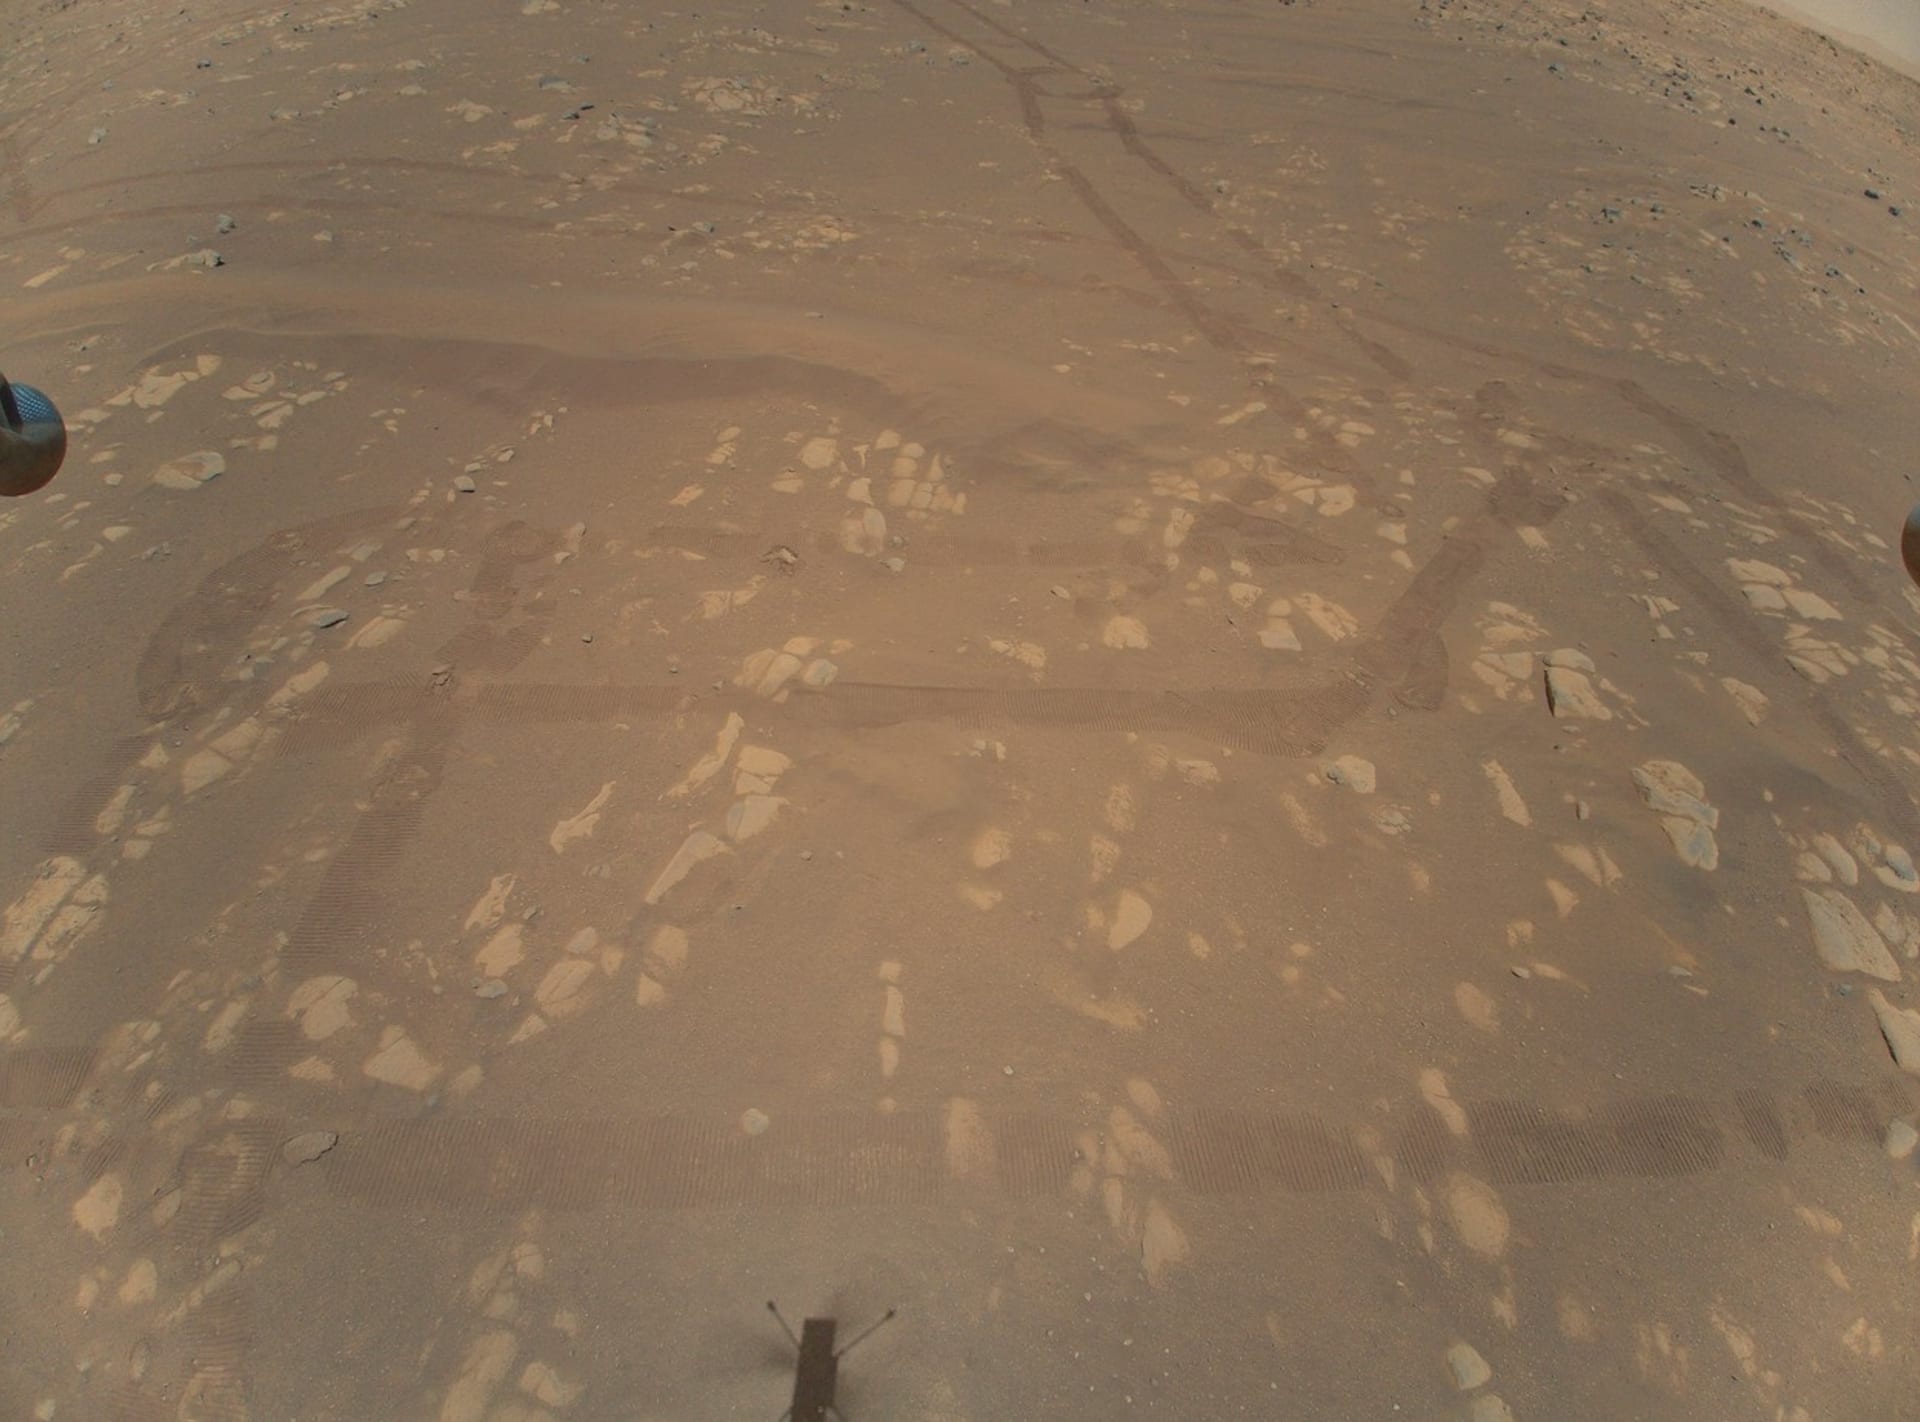 Minivrtulník Ingenuity pořídil úchvatné snímky povrchu Marsu z několikametrové výšky. 